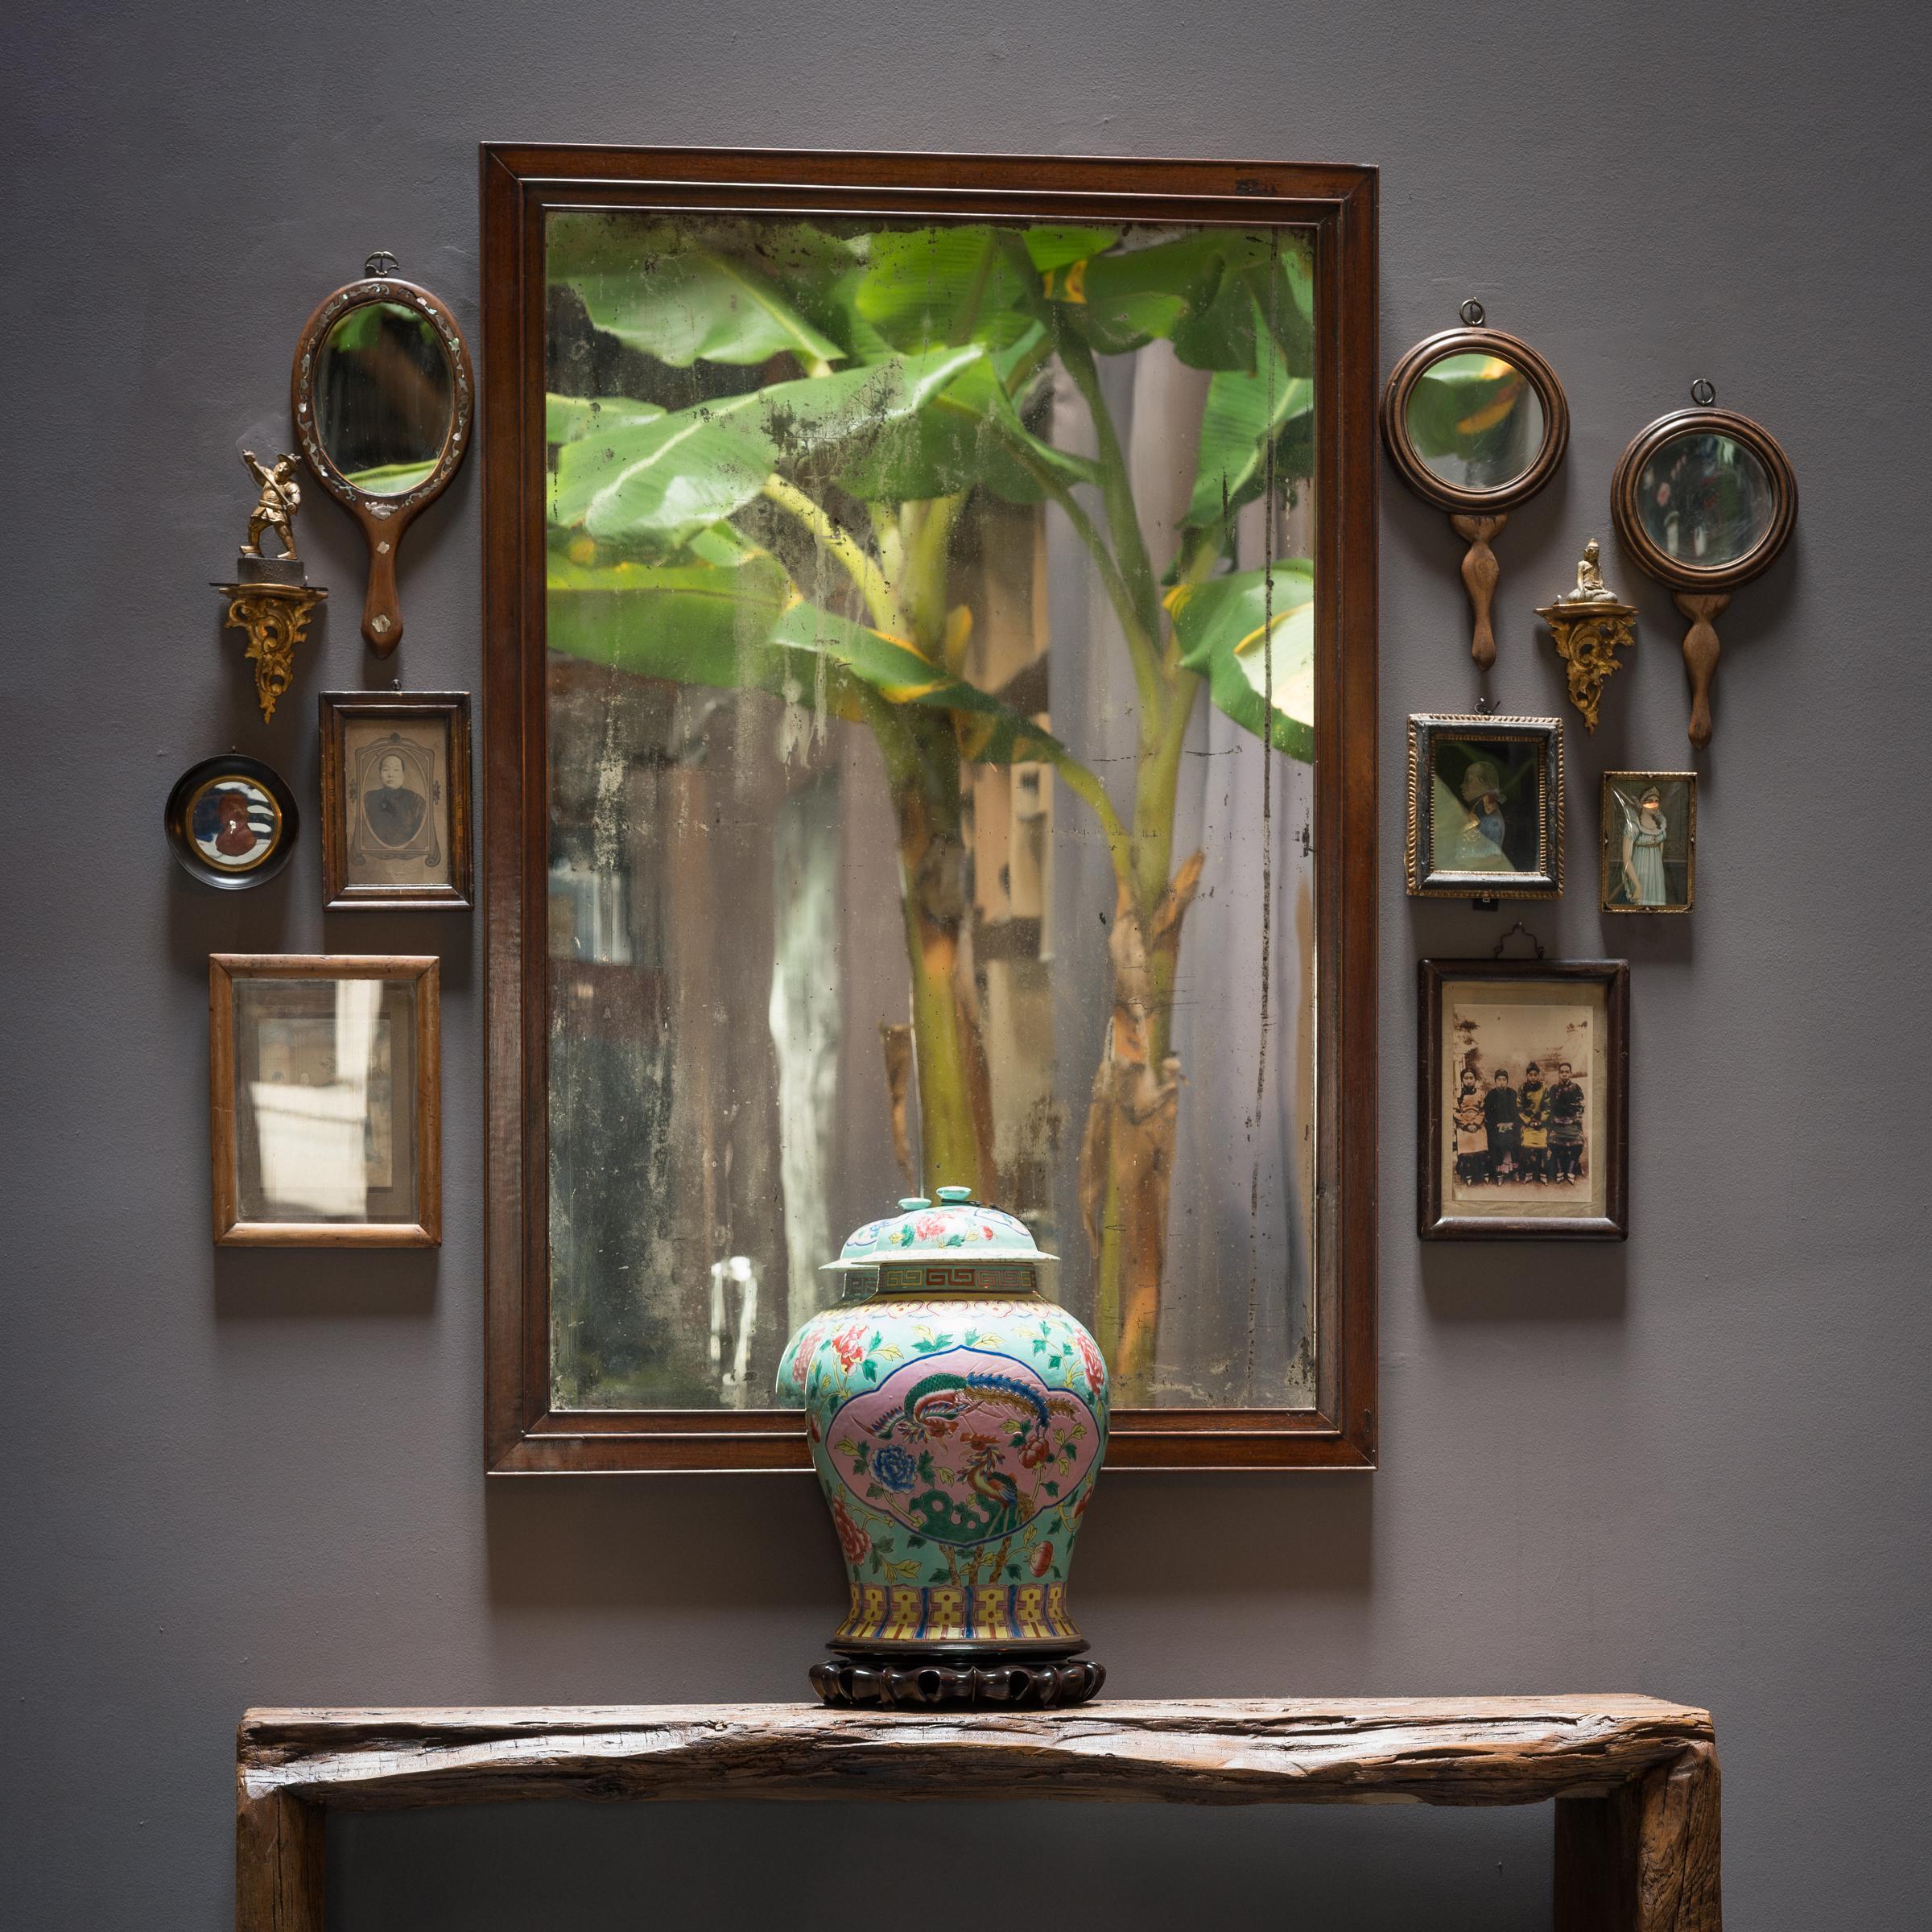 Ces charmants miroirs à main datent du début du XXe siècle et présentent des miroirs ronds enchâssés dans des cadres en bois dur tourné. Décorée de façon minimale, la paire est simplement sculptée pour mettre en valeur le grain serré et la couleur